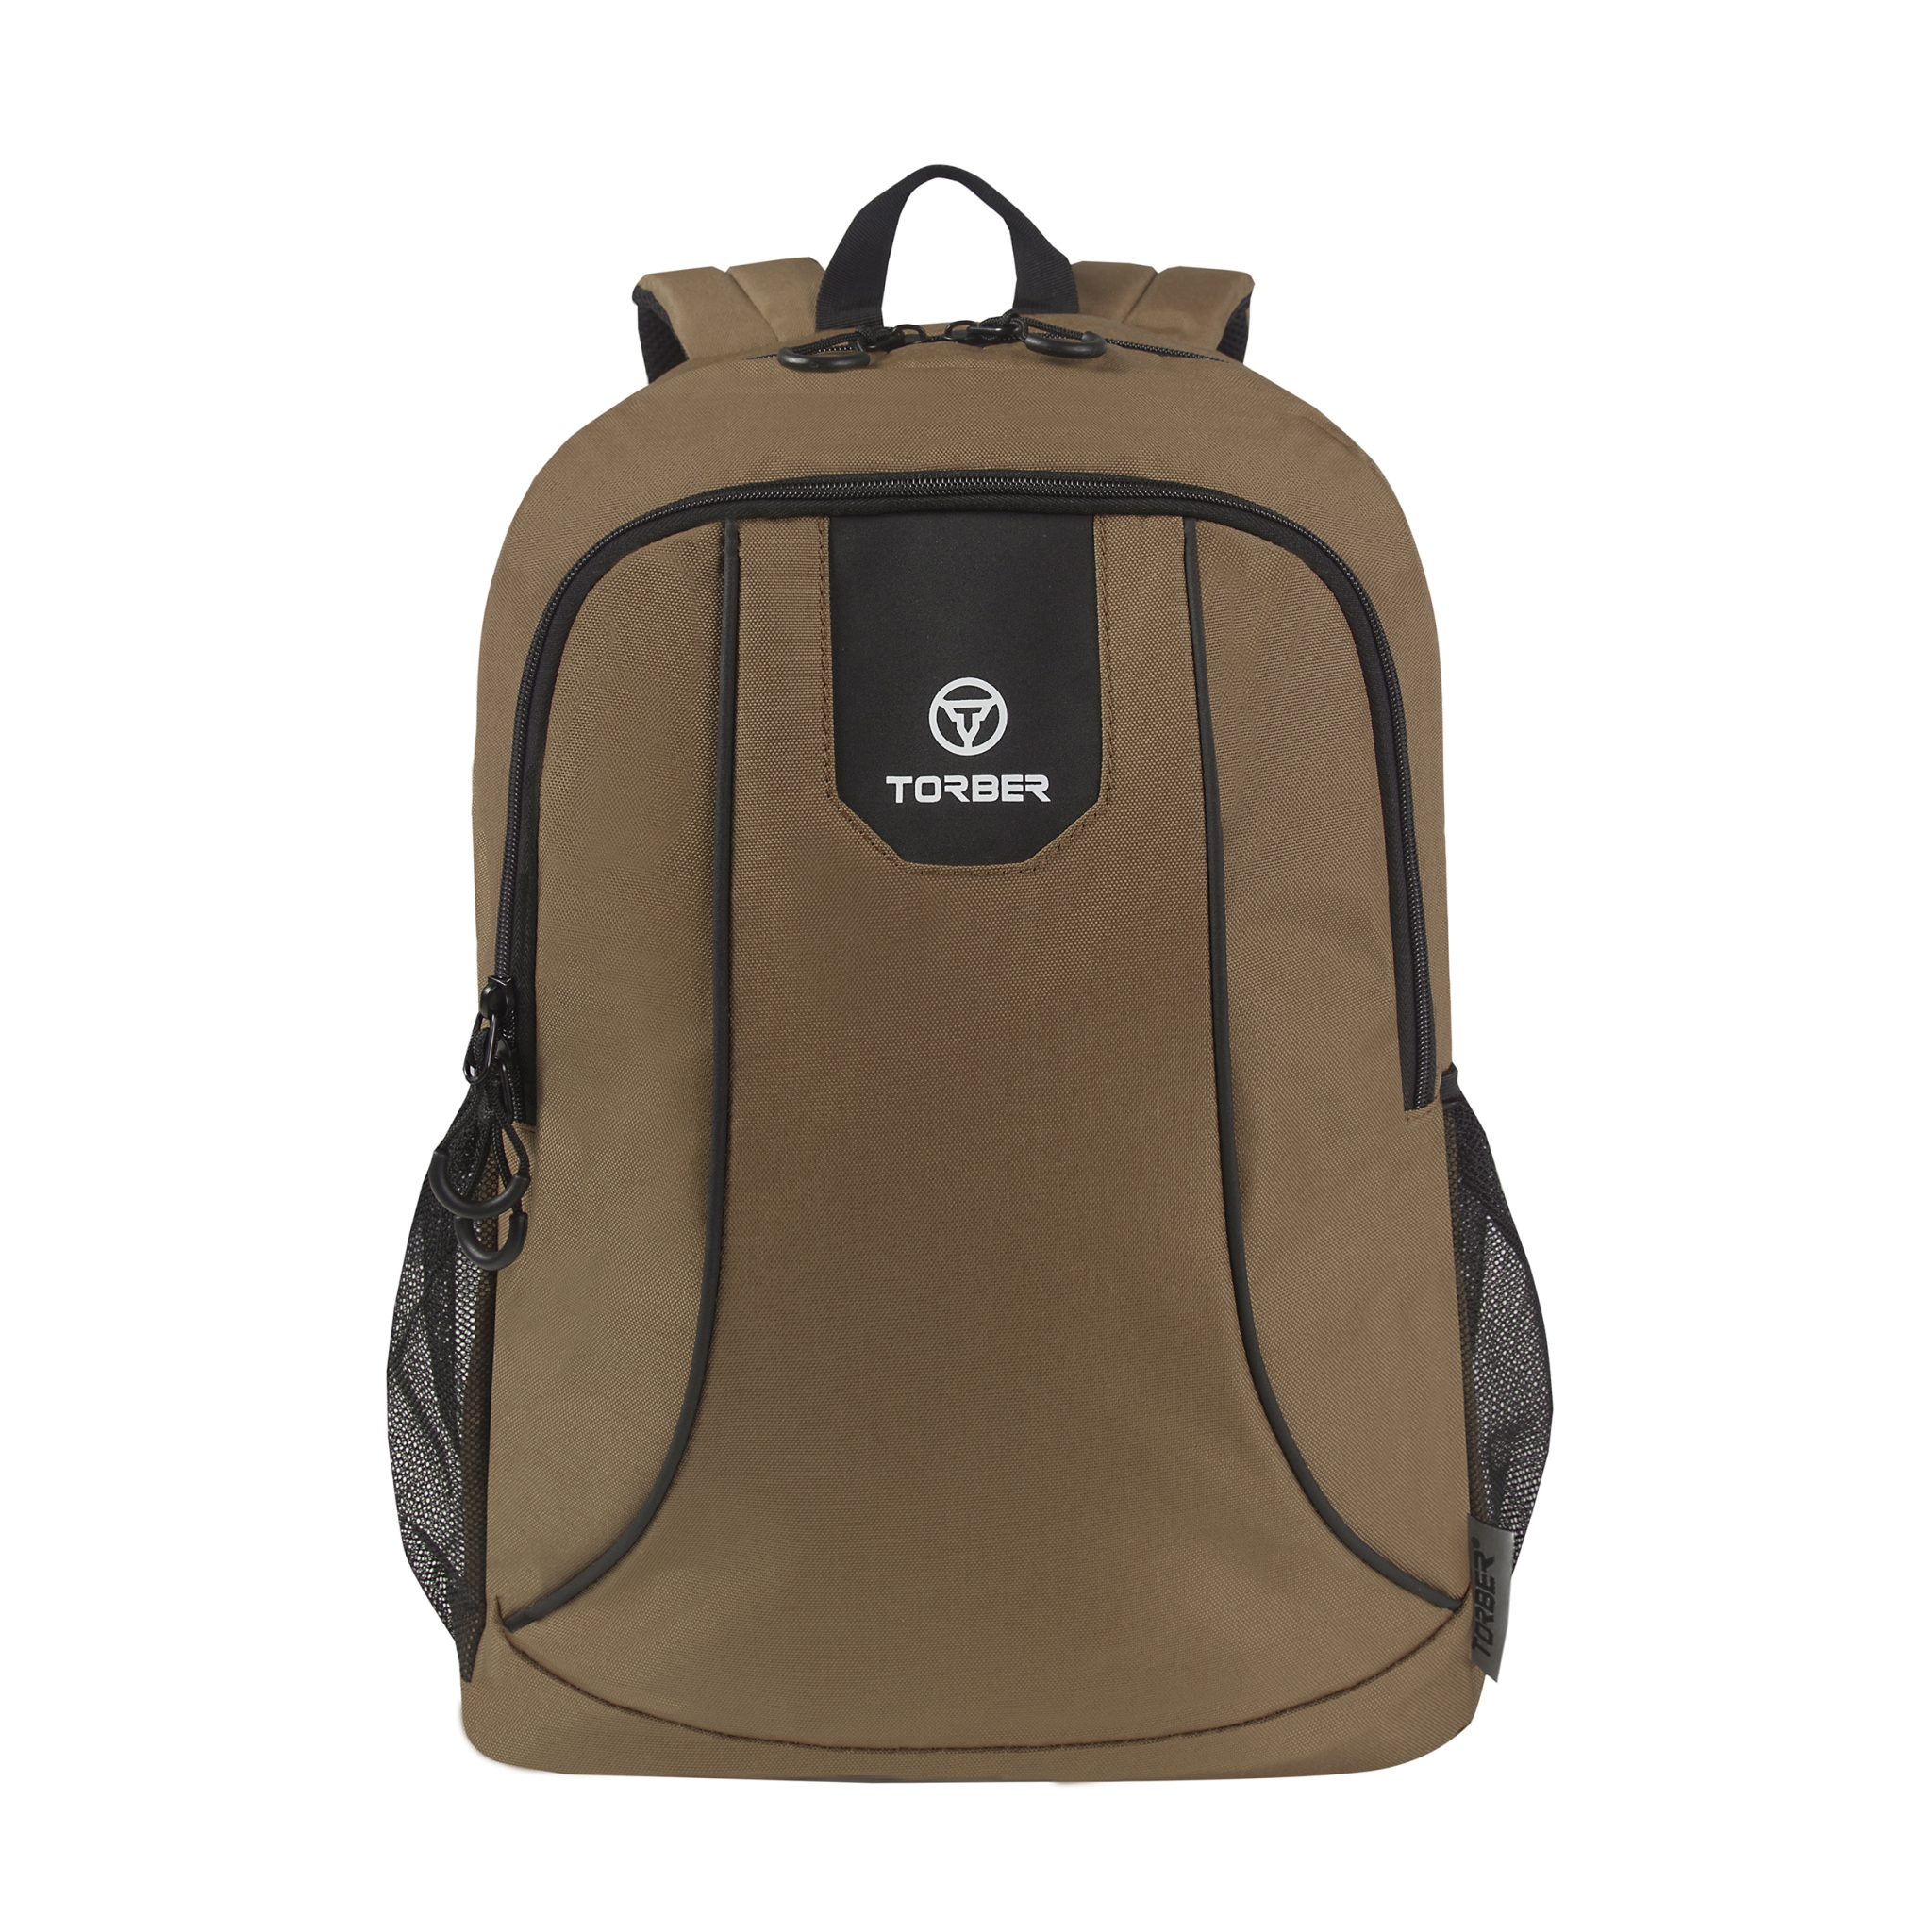 Рюкзак TORBER ROCKIT с отделением для ноутбука 15,6", коричневый, полиэстер 600D, 46 х 30 x 13, коричневый